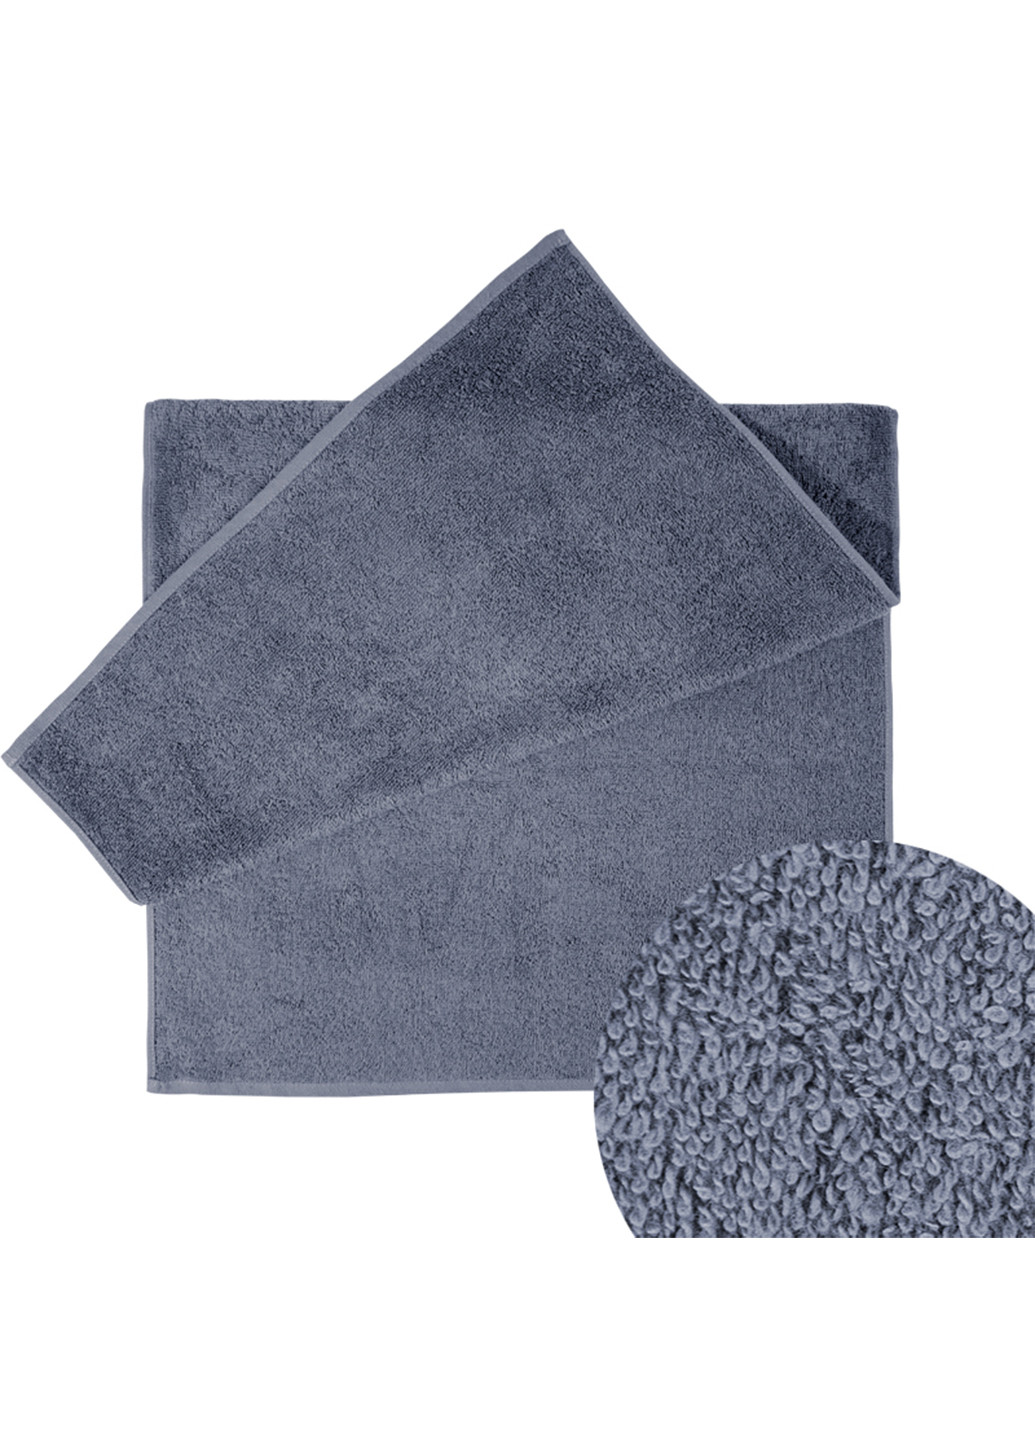 Ярослав полотенце яр-400 махровое 100х150 однотонный темно-серый производство - Украина